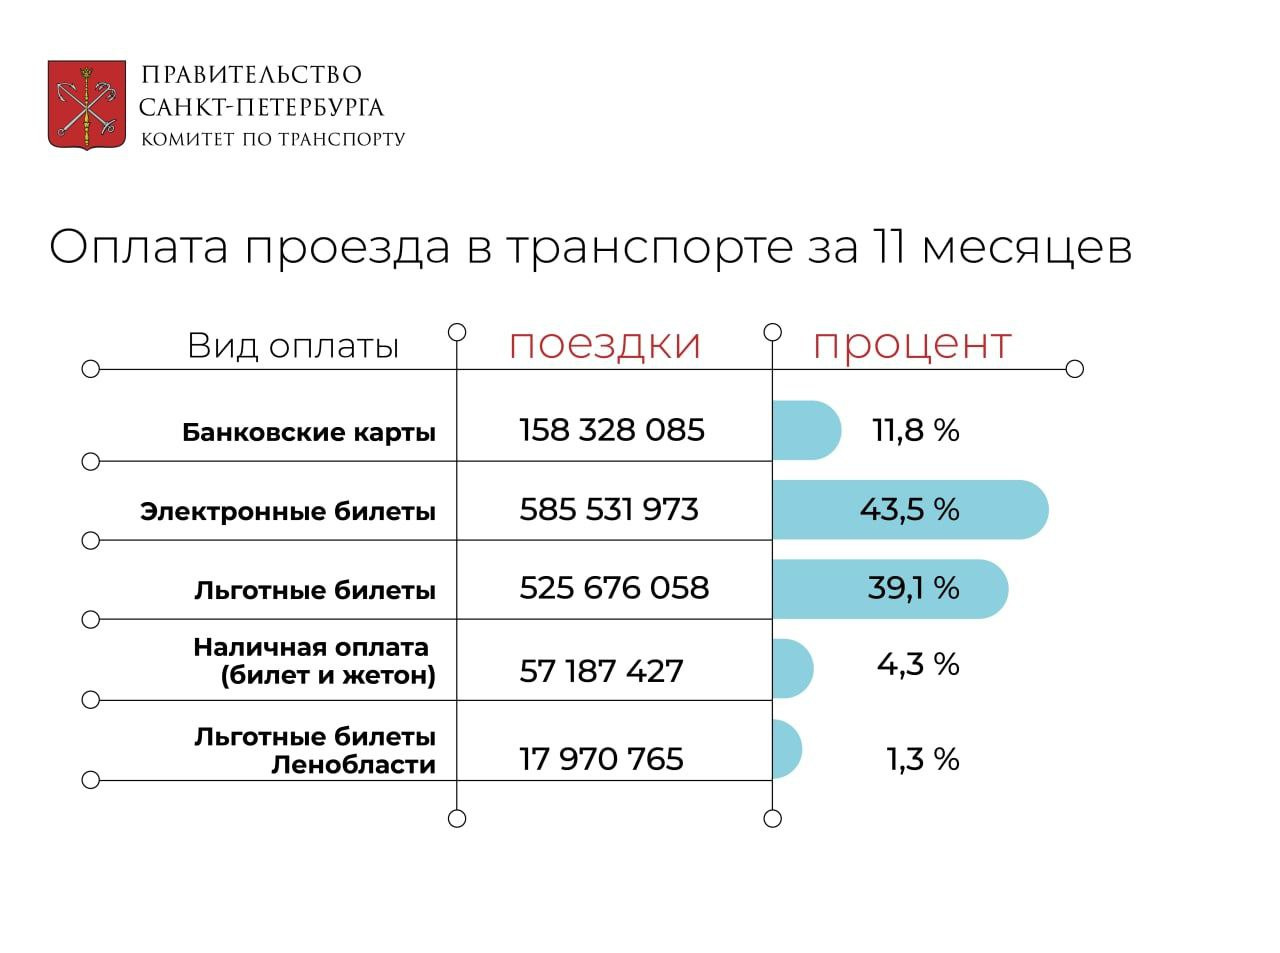 Петербуржцы предпочли электронную оплату в транспорте. На другие способы пришлось лишь 5 % поездок